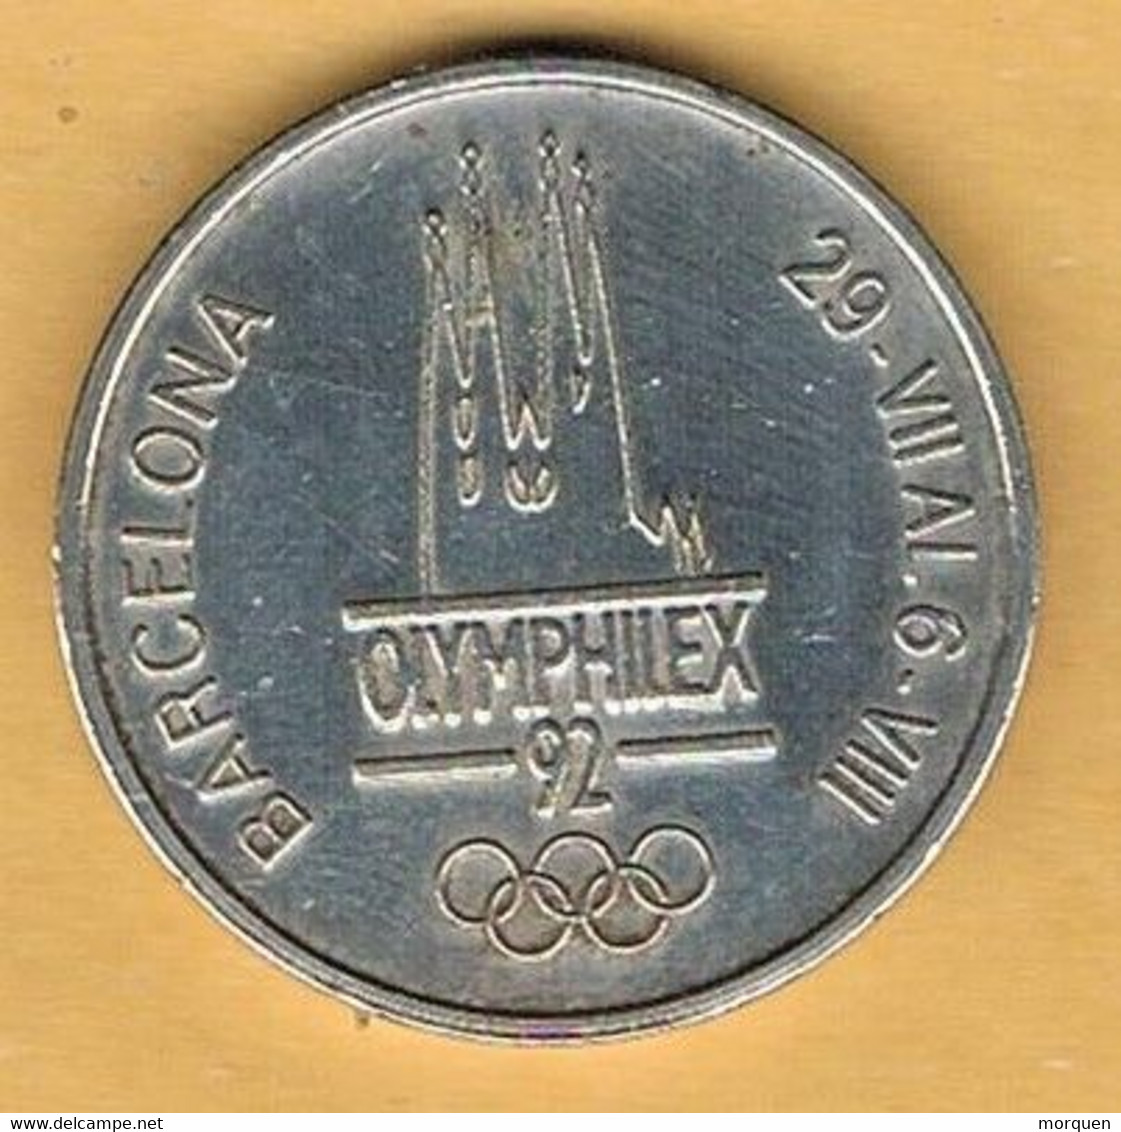 Medalla Conmemorativa BARCELONA 1992. OLYMPHILEX, Juegos Olimpicos, Niquel - Profesionales/De Sociedad